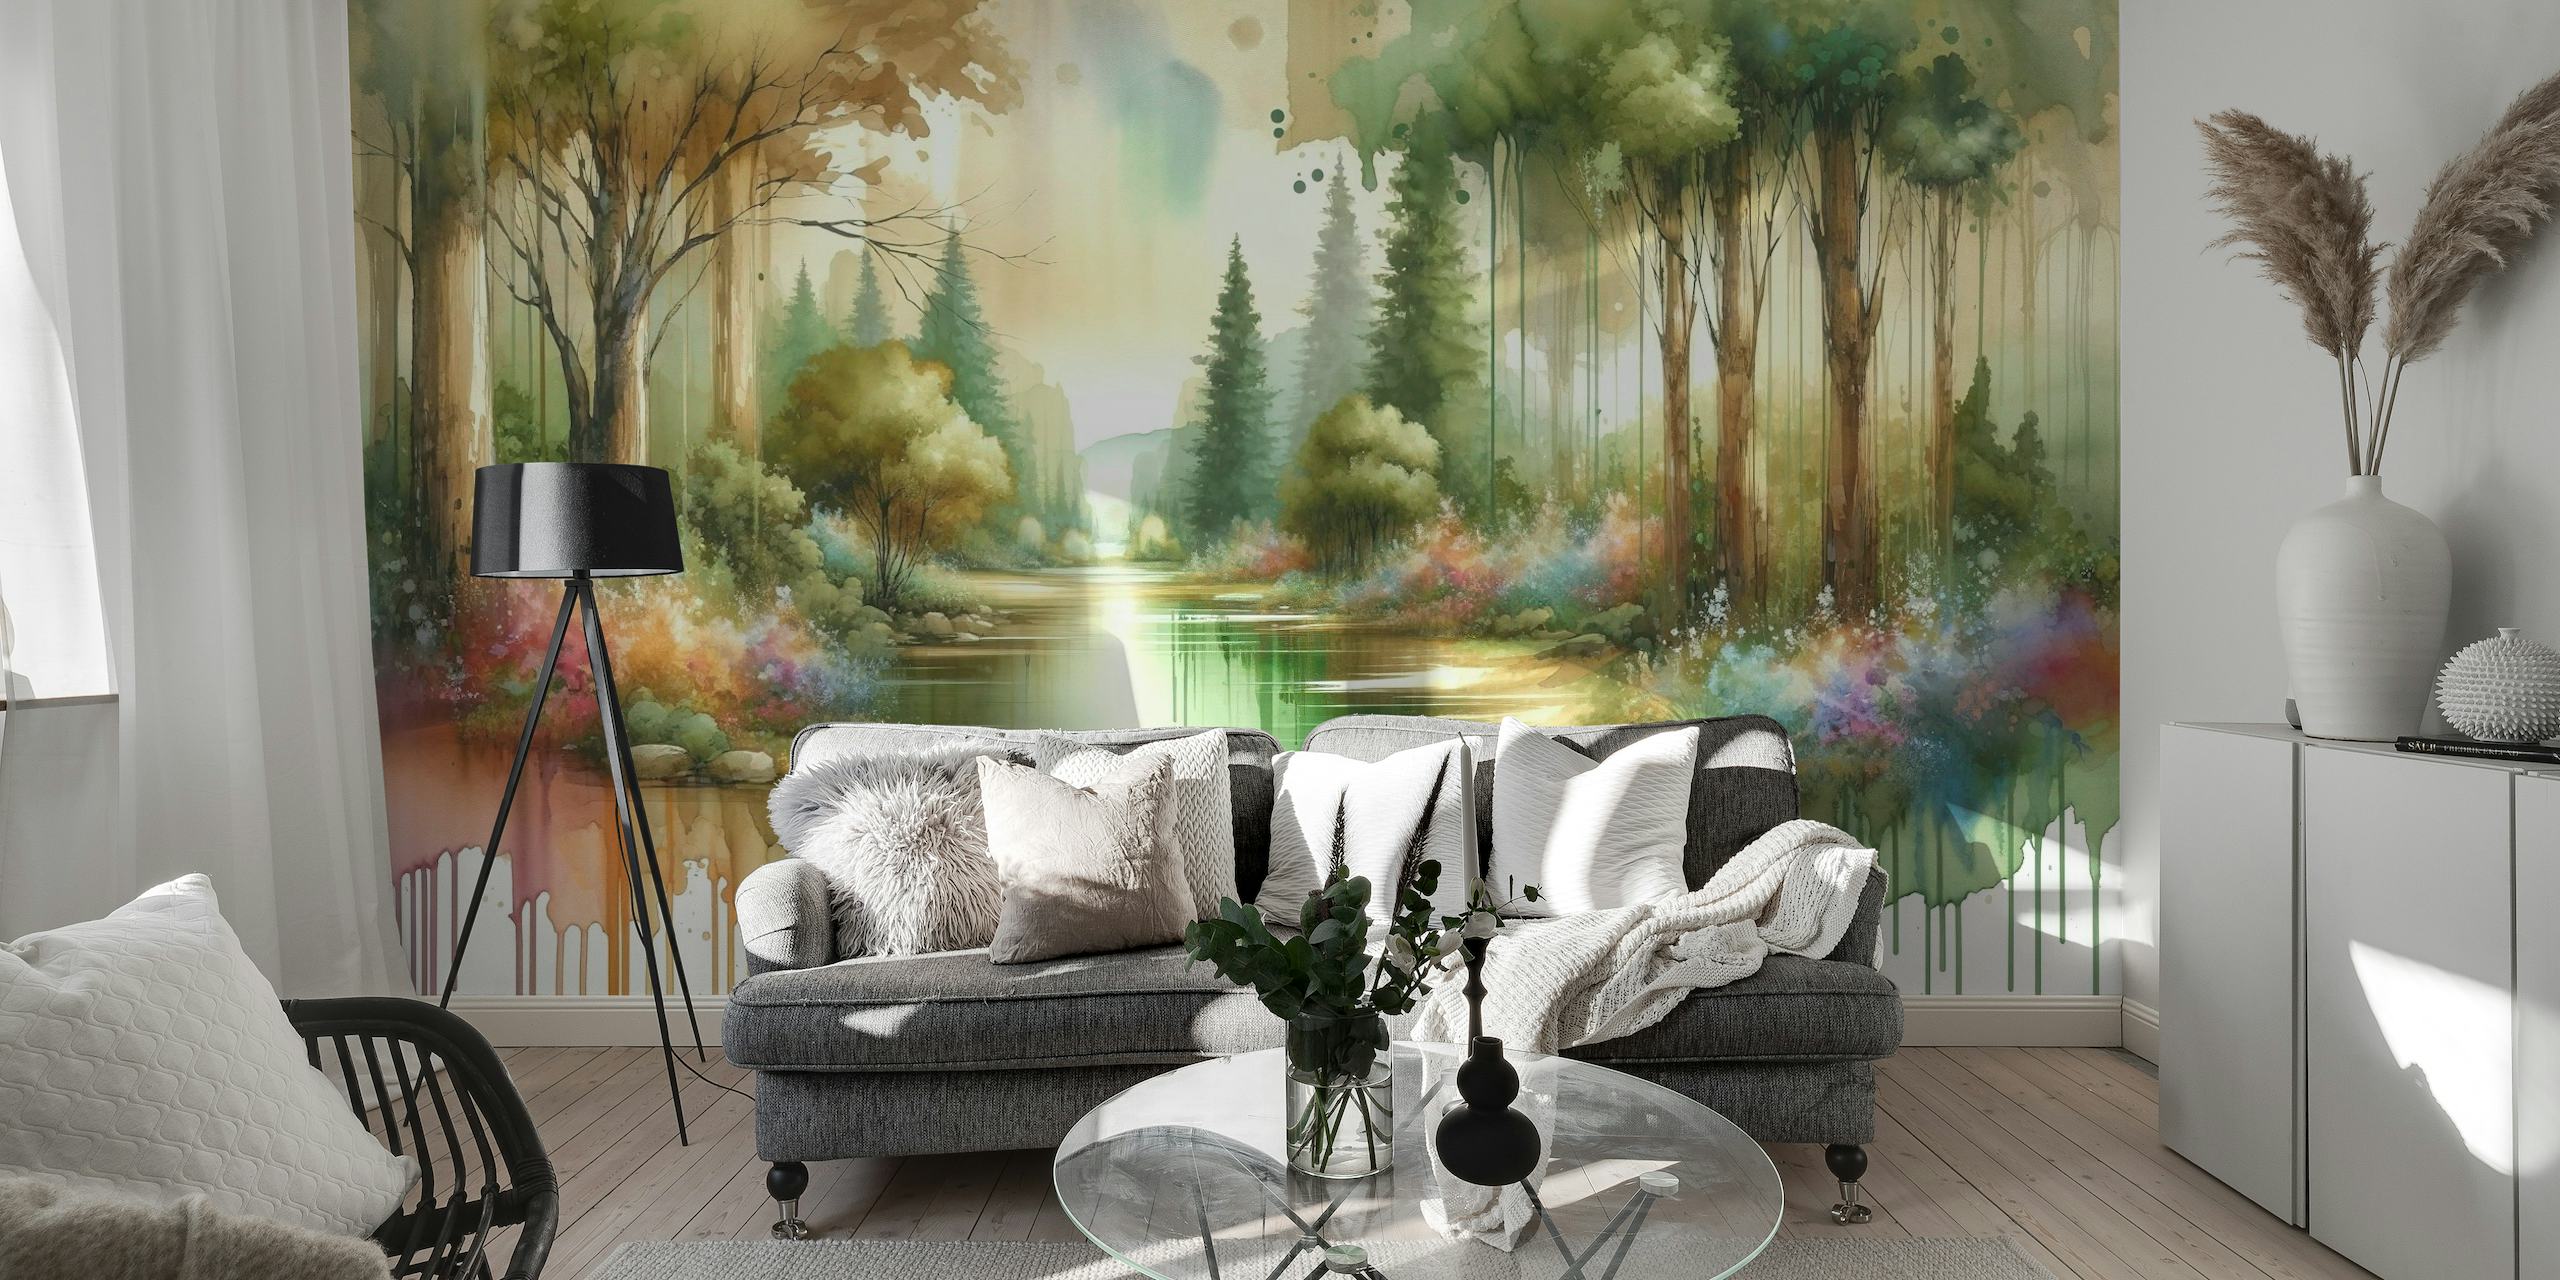 Drömmande akvarellskogsscen med en reflekterande sjö och färgglad flora